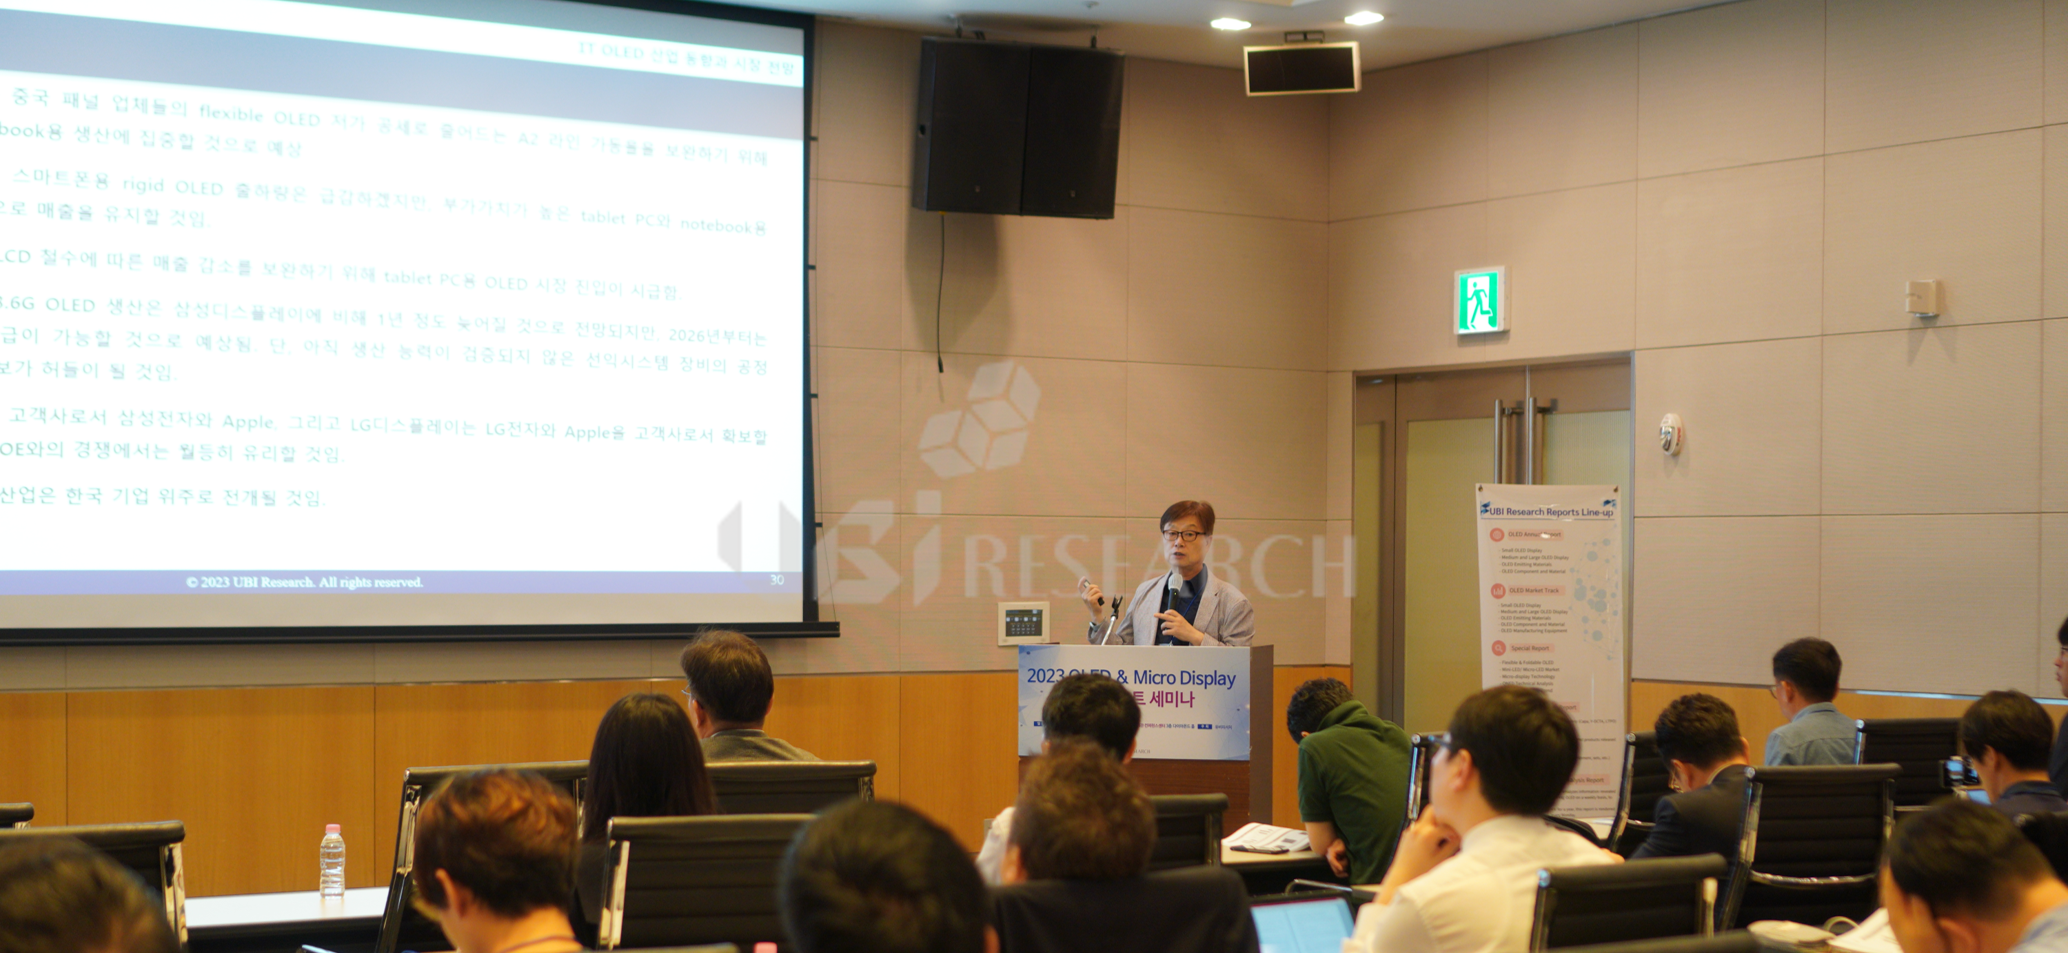 유비리서치 이충훈 대표가 7월 5일 서울 여의도에서 열린 'OLED&마이크로디스플레이 애널리스트 세미나'에서 발표하고 있다.